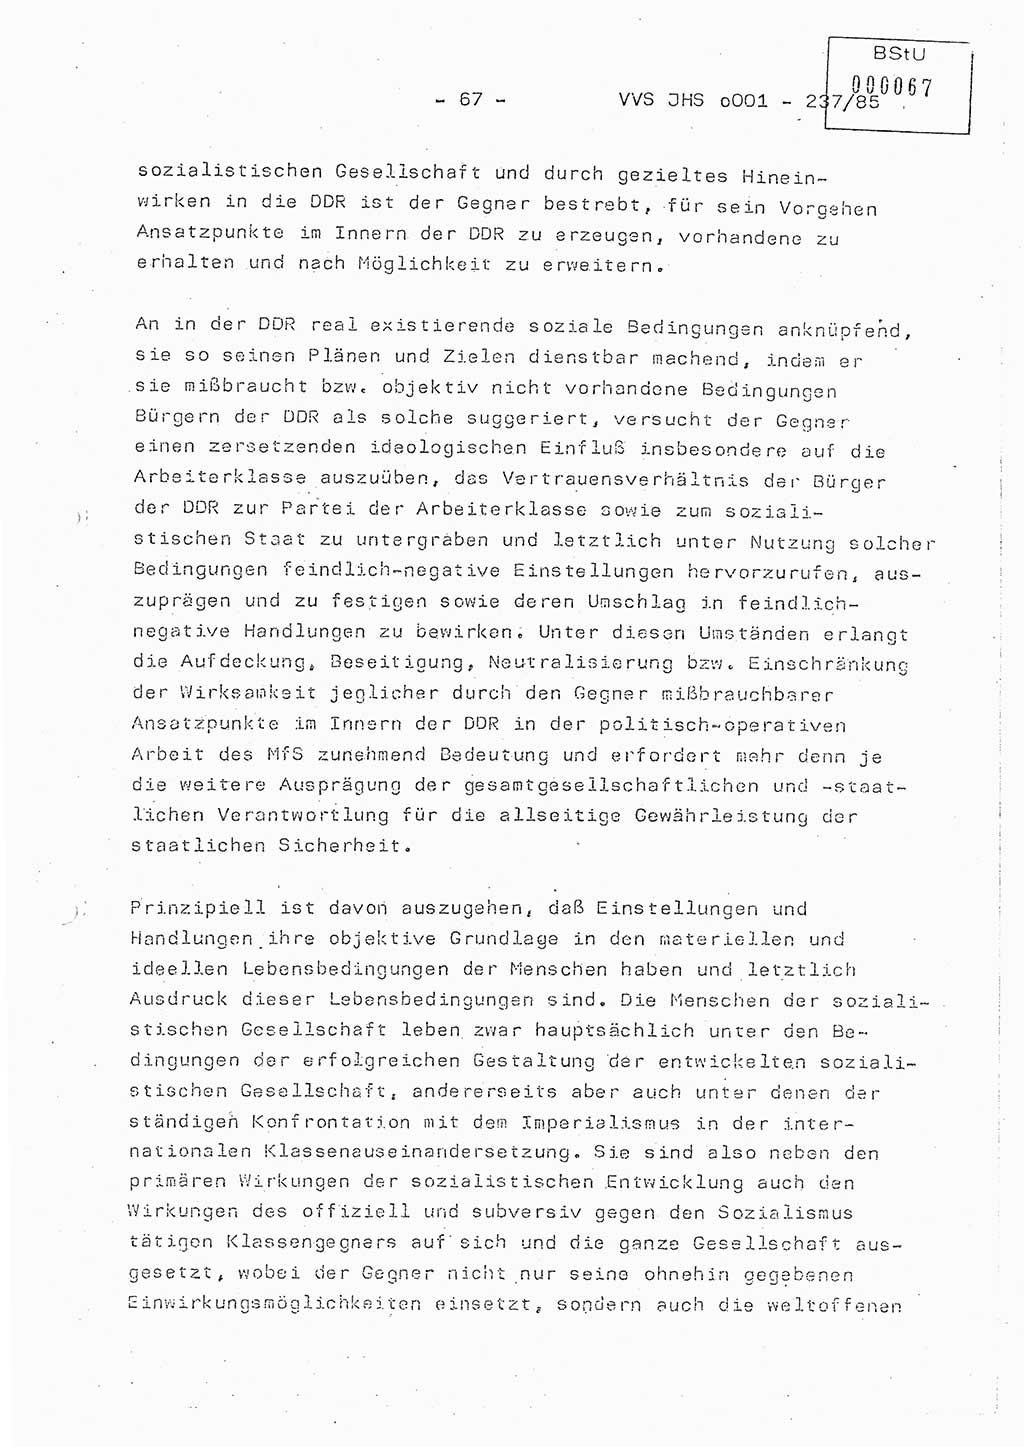 Dissertation Oberstleutnant Peter Jakulski (JHS), Oberstleutnat Christian Rudolph (HA Ⅸ), Major Horst Böttger (ZMD), Major Wolfgang Grüneberg (JHS), Major Albert Meutsch (JHS), Ministerium für Staatssicherheit (MfS) [Deutsche Demokratische Republik (DDR)], Juristische Hochschule (JHS), Vertrauliche Verschlußsache (VVS) o001-237/85, Potsdam 1985, Seite 67 (Diss. MfS DDR JHS VVS o001-237/85 1985, S. 67)